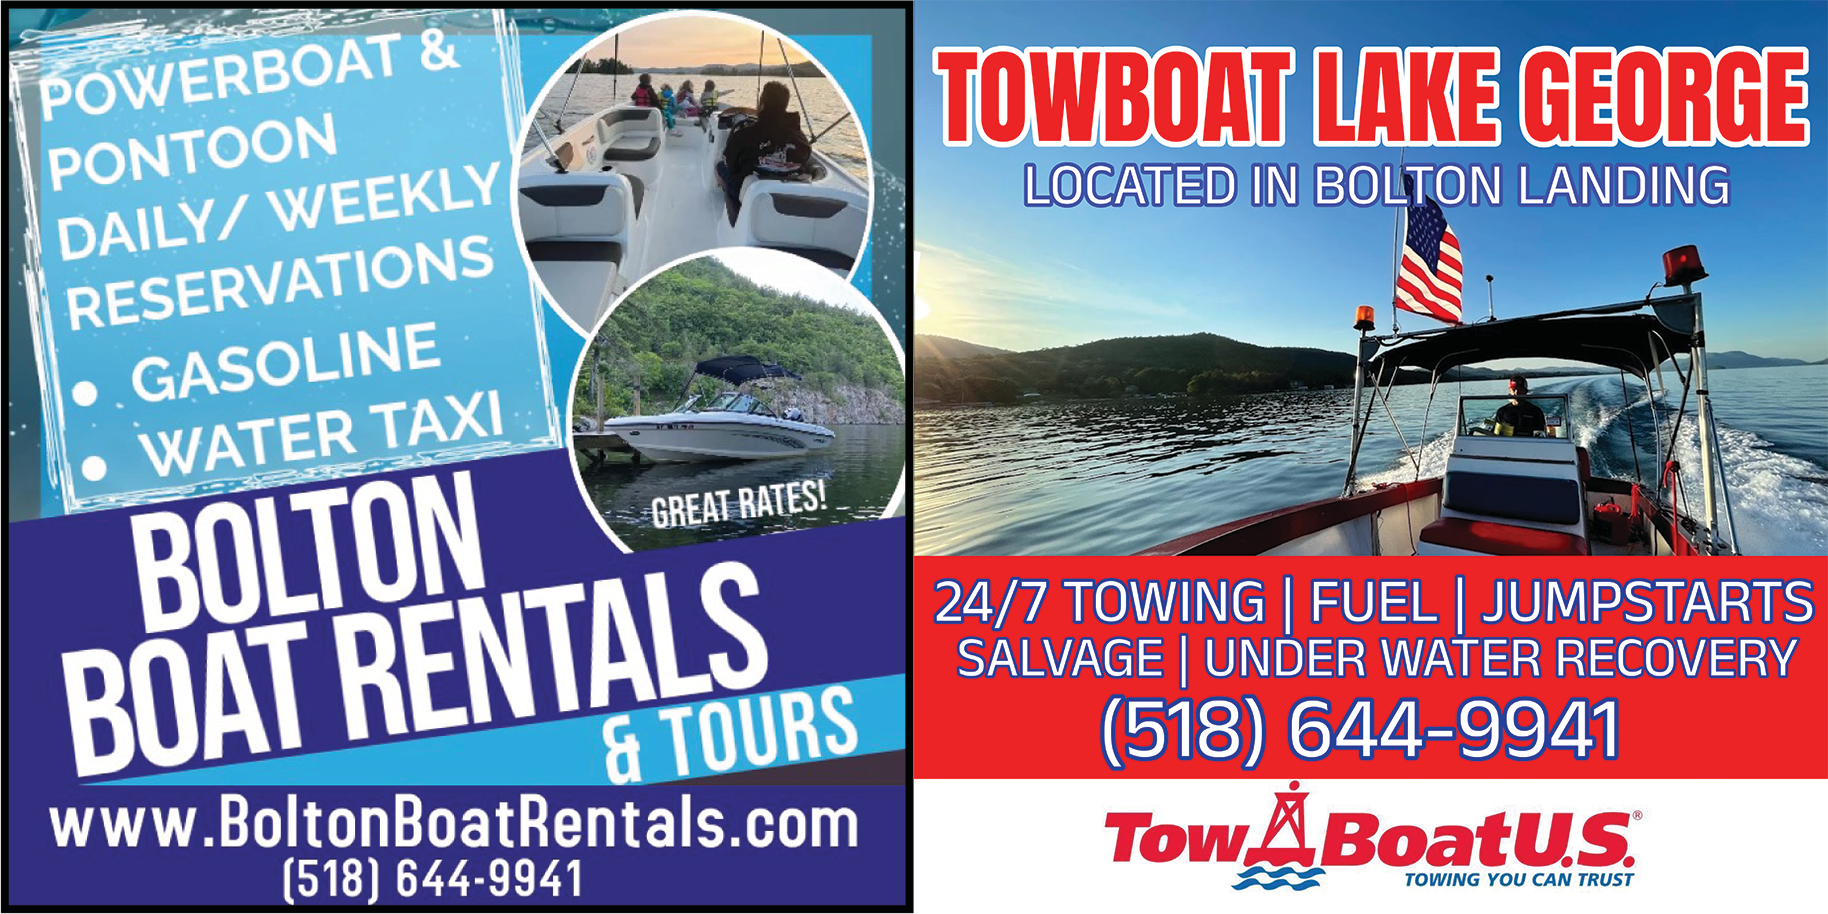 Towboat Lake George LLC Print Ad